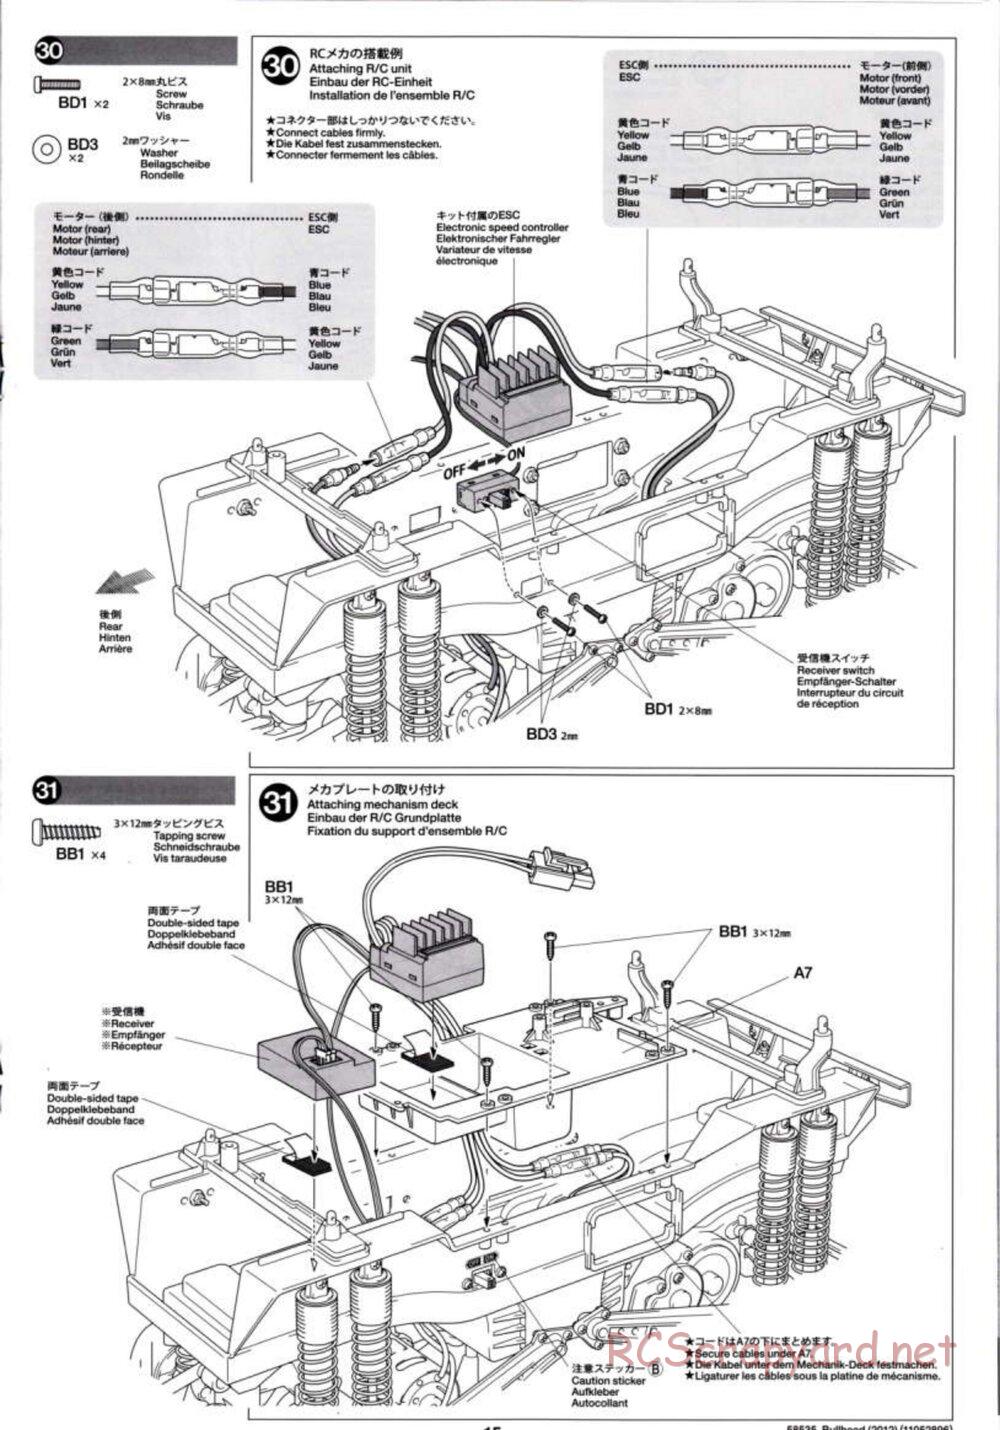 Tamiya - Bullhead 2012 - CB Chassis - Manual - Page 15